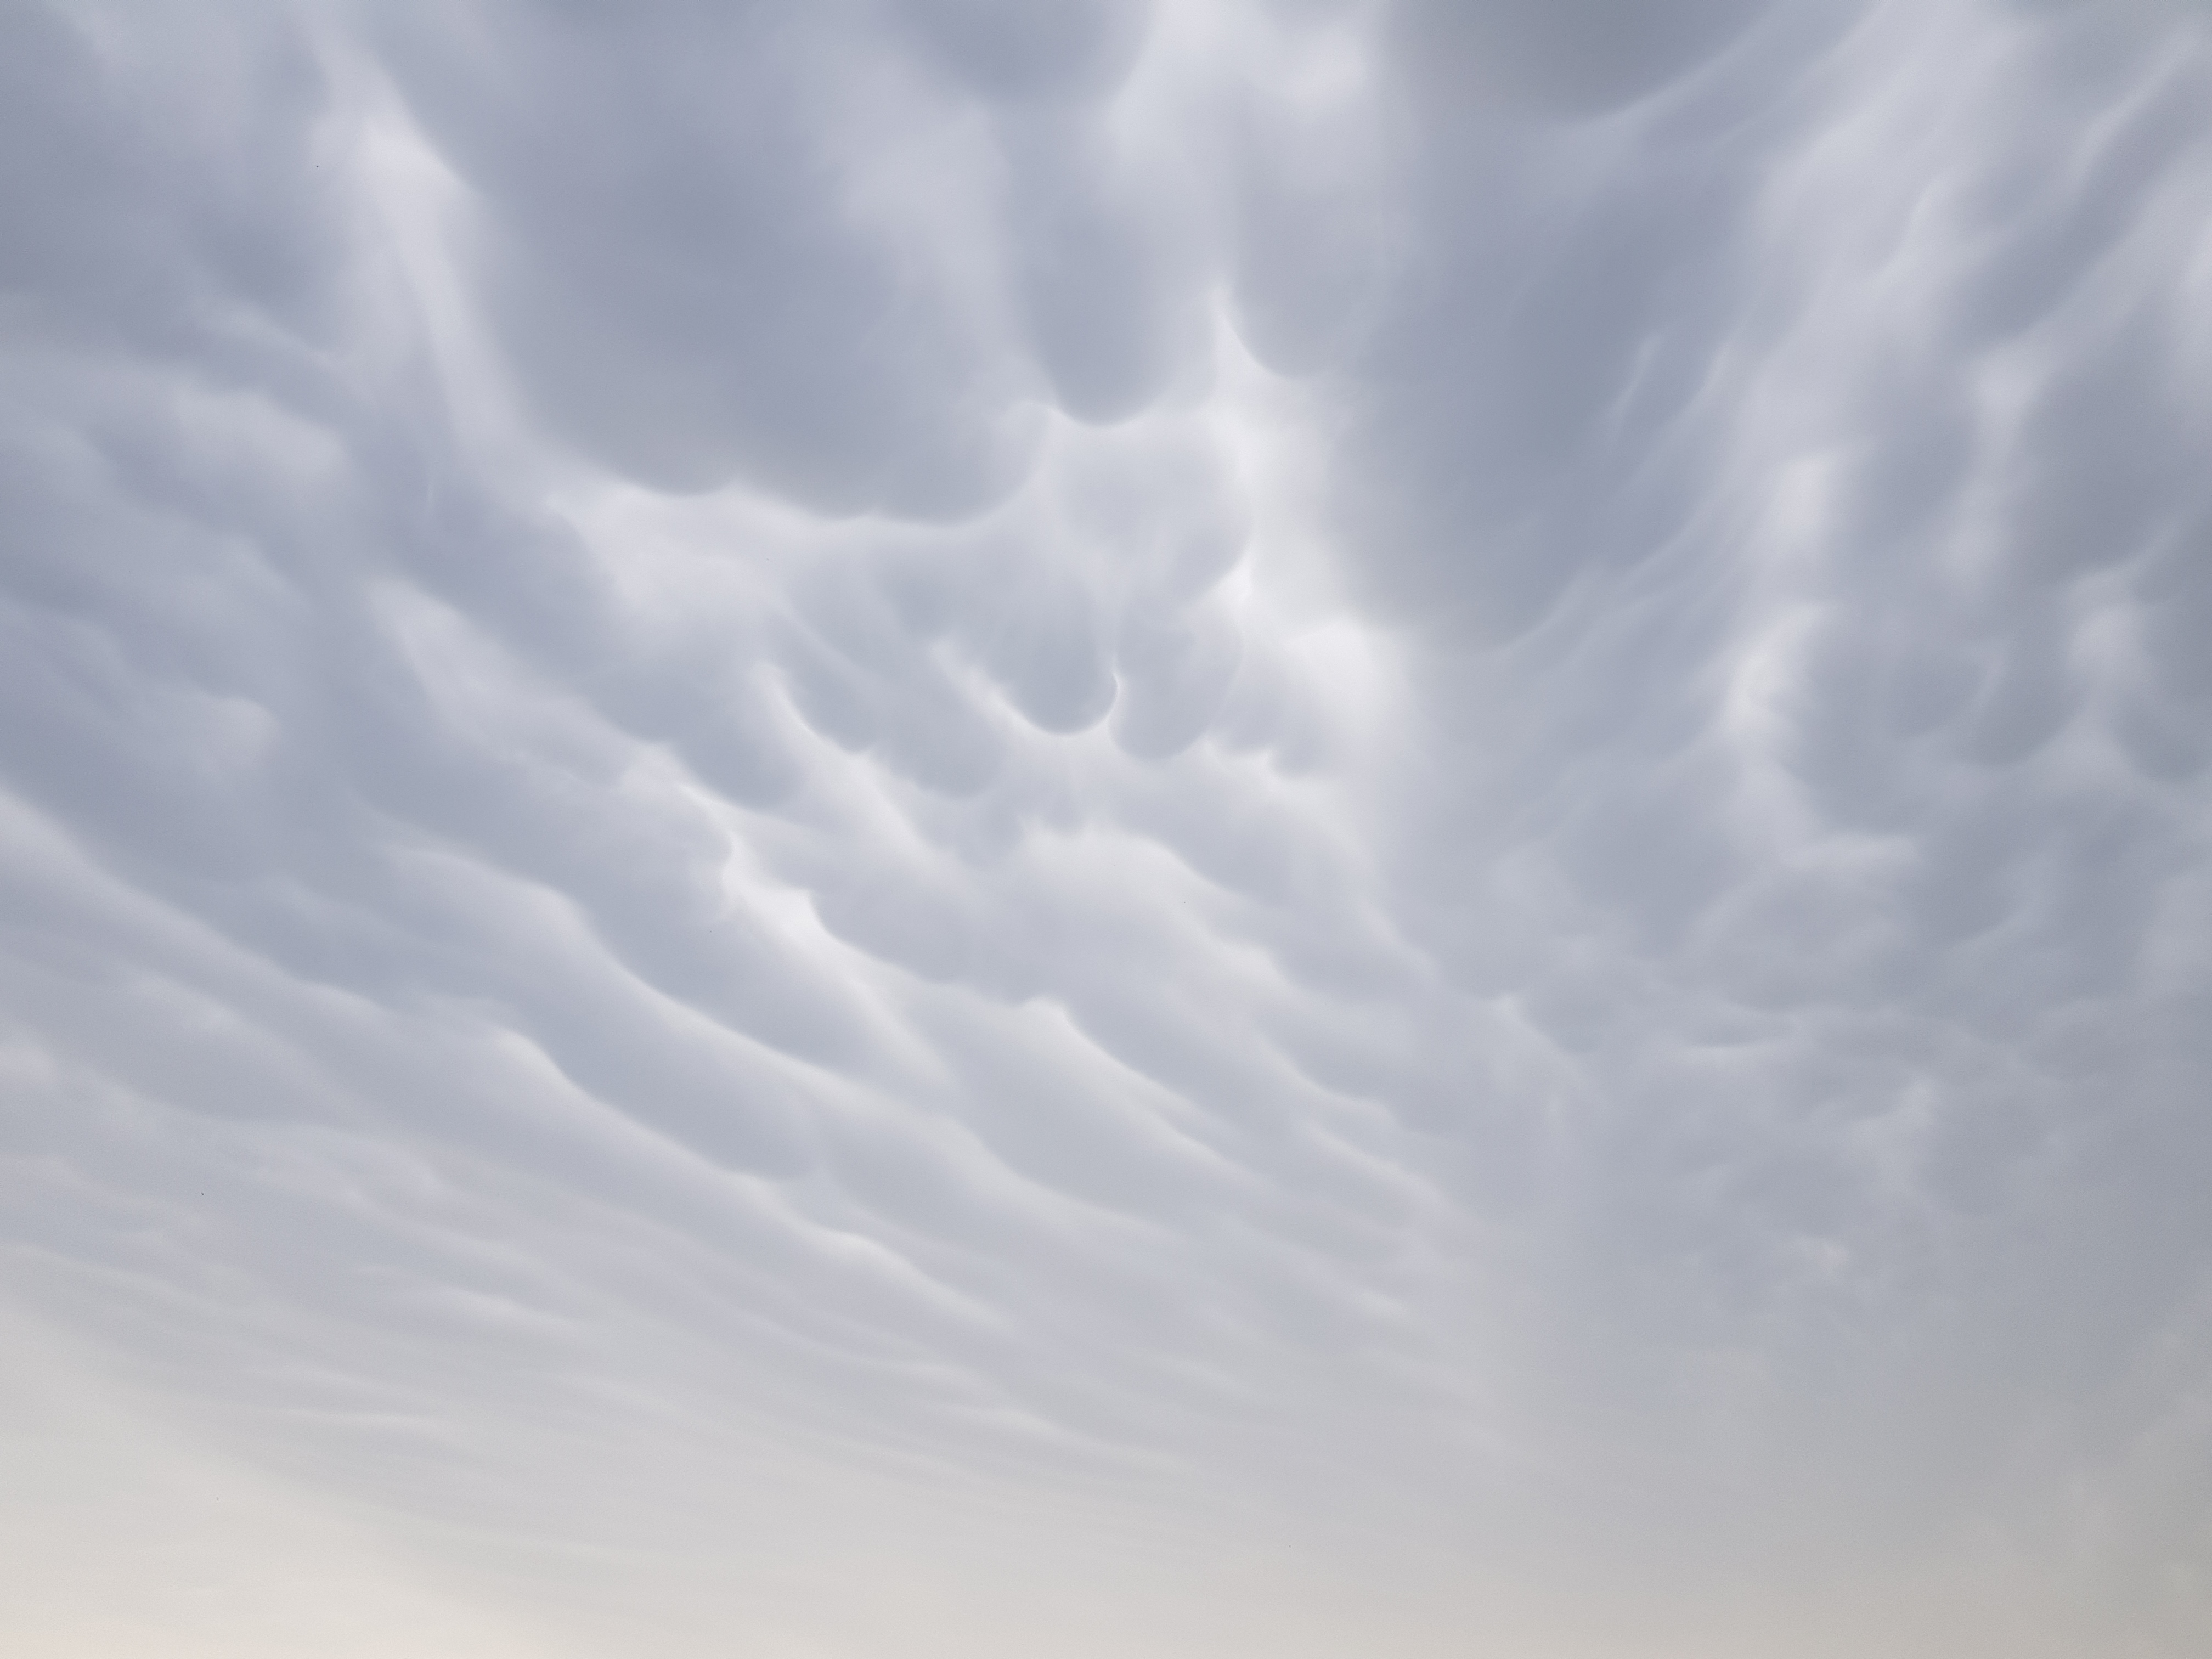 Te chmury towarzyszą gwałtownym burzom. Wyglądają jak ogromne bąble lub wymiona (zdjęcia)